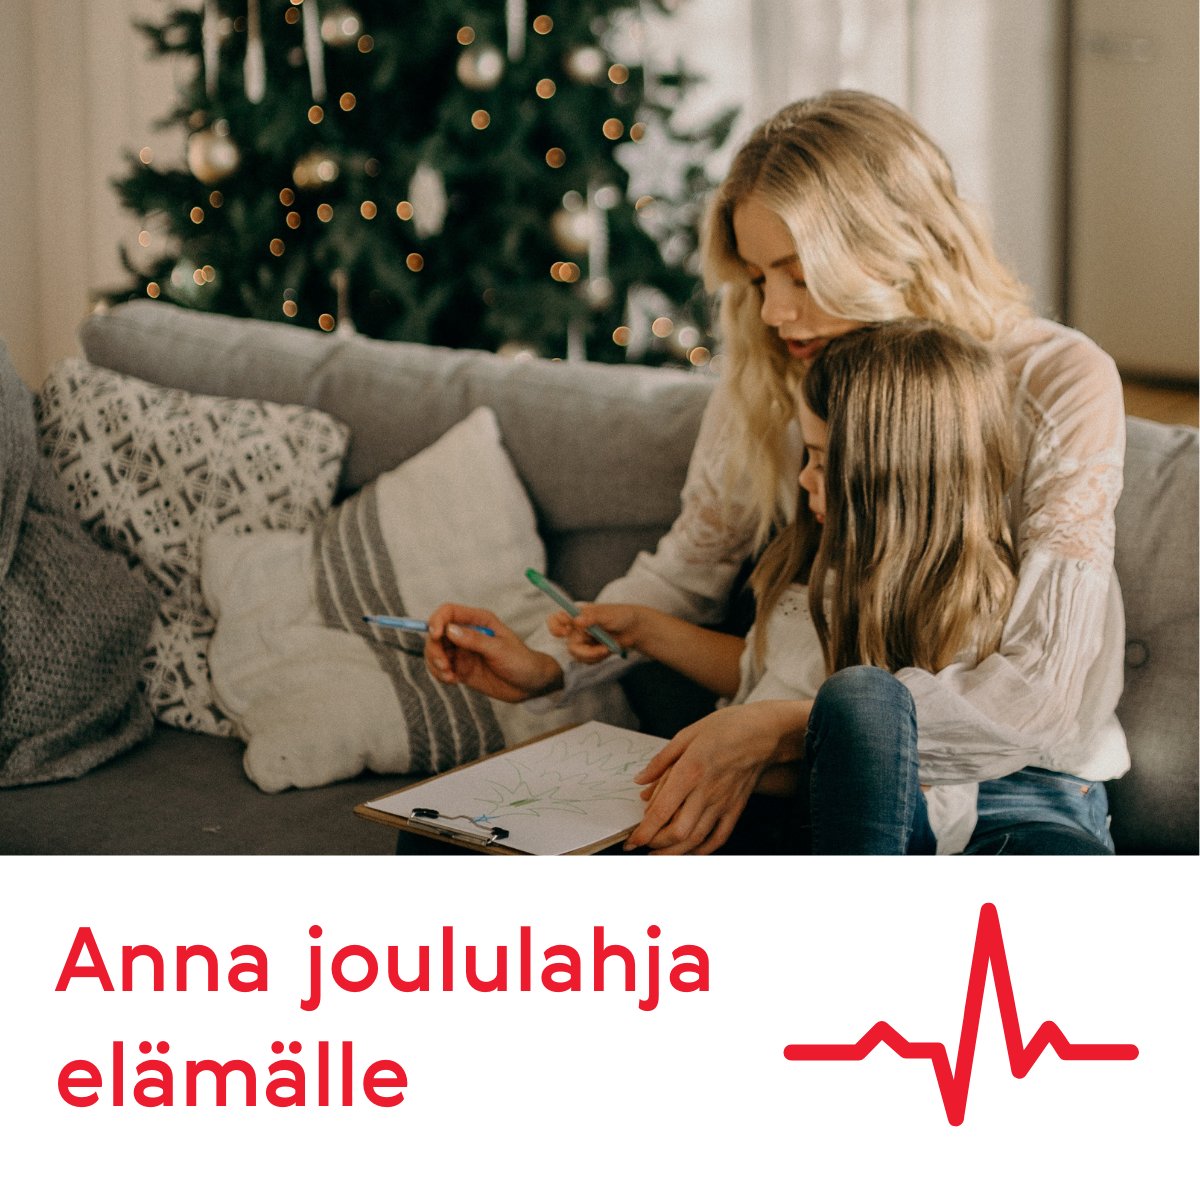 Äkillinen, odottamaton sydänpysähdys on yleisin yksittäinen kuolinsyy länsimaissa. Juuri nyt suomalaisten sydänturvallisuus on vaakalaudalla, koska sydäniskuritoiminta uhkaa jäädä ilman rahoitusta.
Osallistu joulukeräykseen ja anna joululahja elämälle. https://t.co/qPEOib8Blm https://t.co/lHvHORNpEP